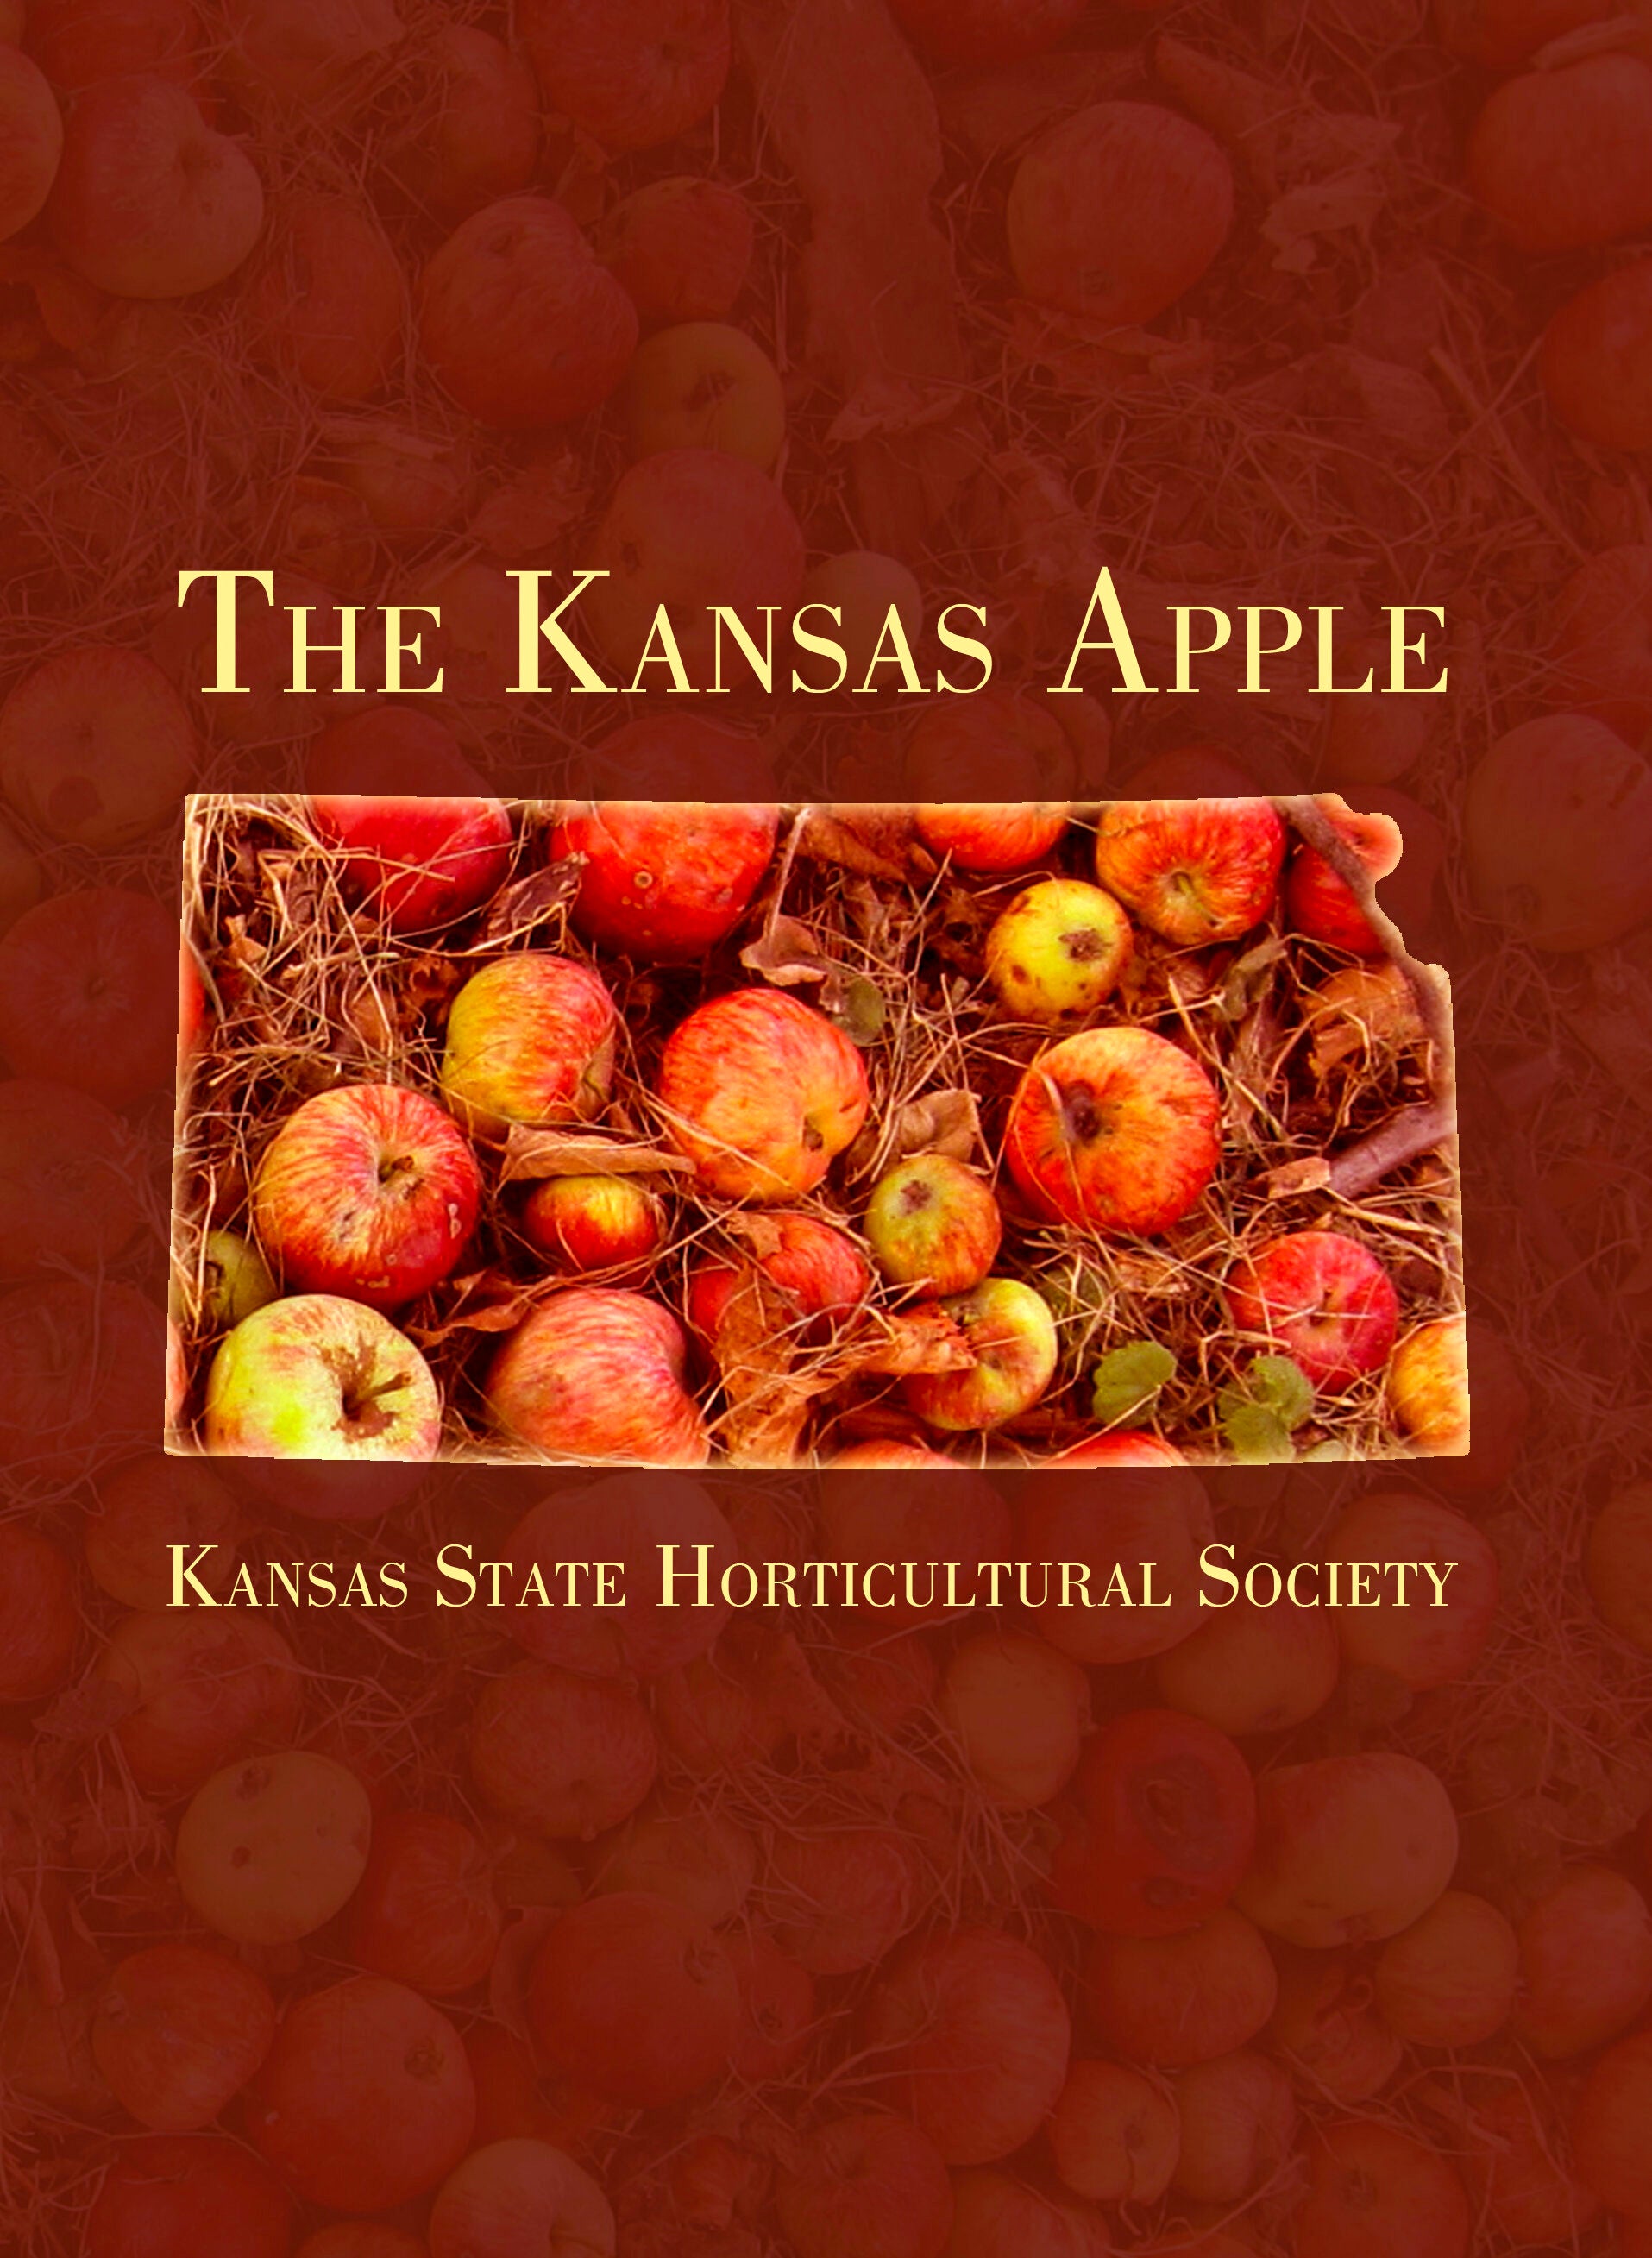 The Kansas Apple